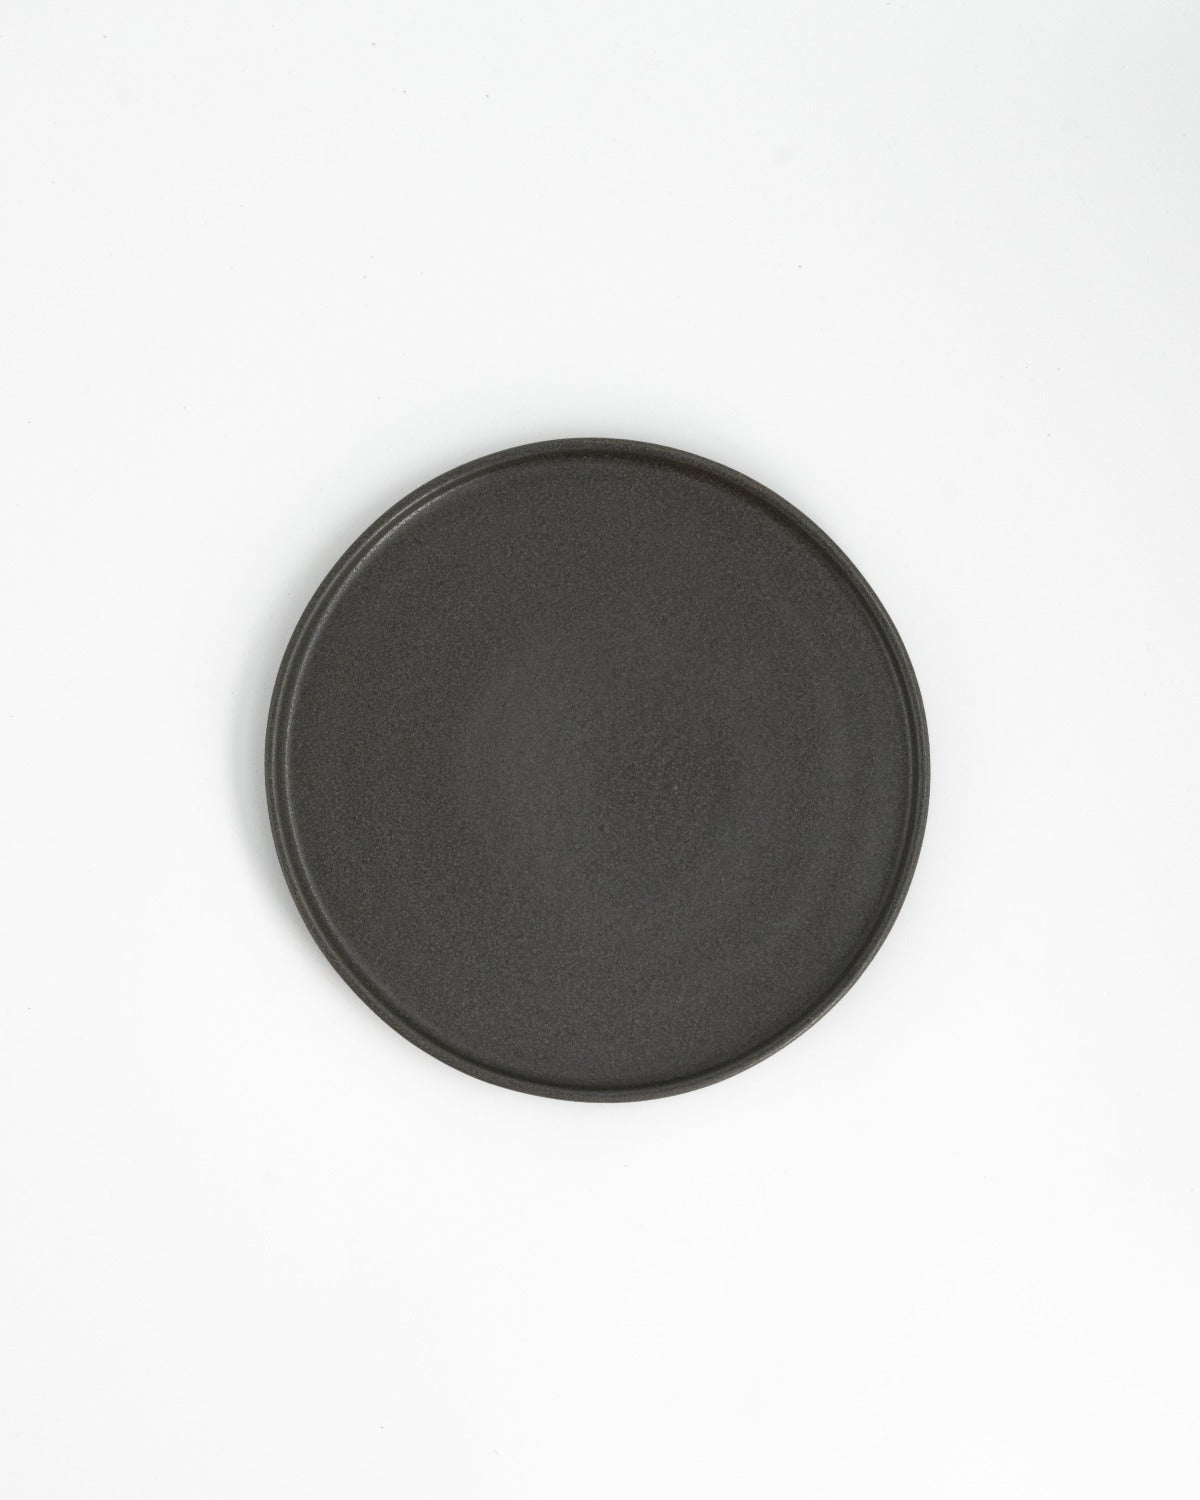 Farrago Plate Stone/22cm 